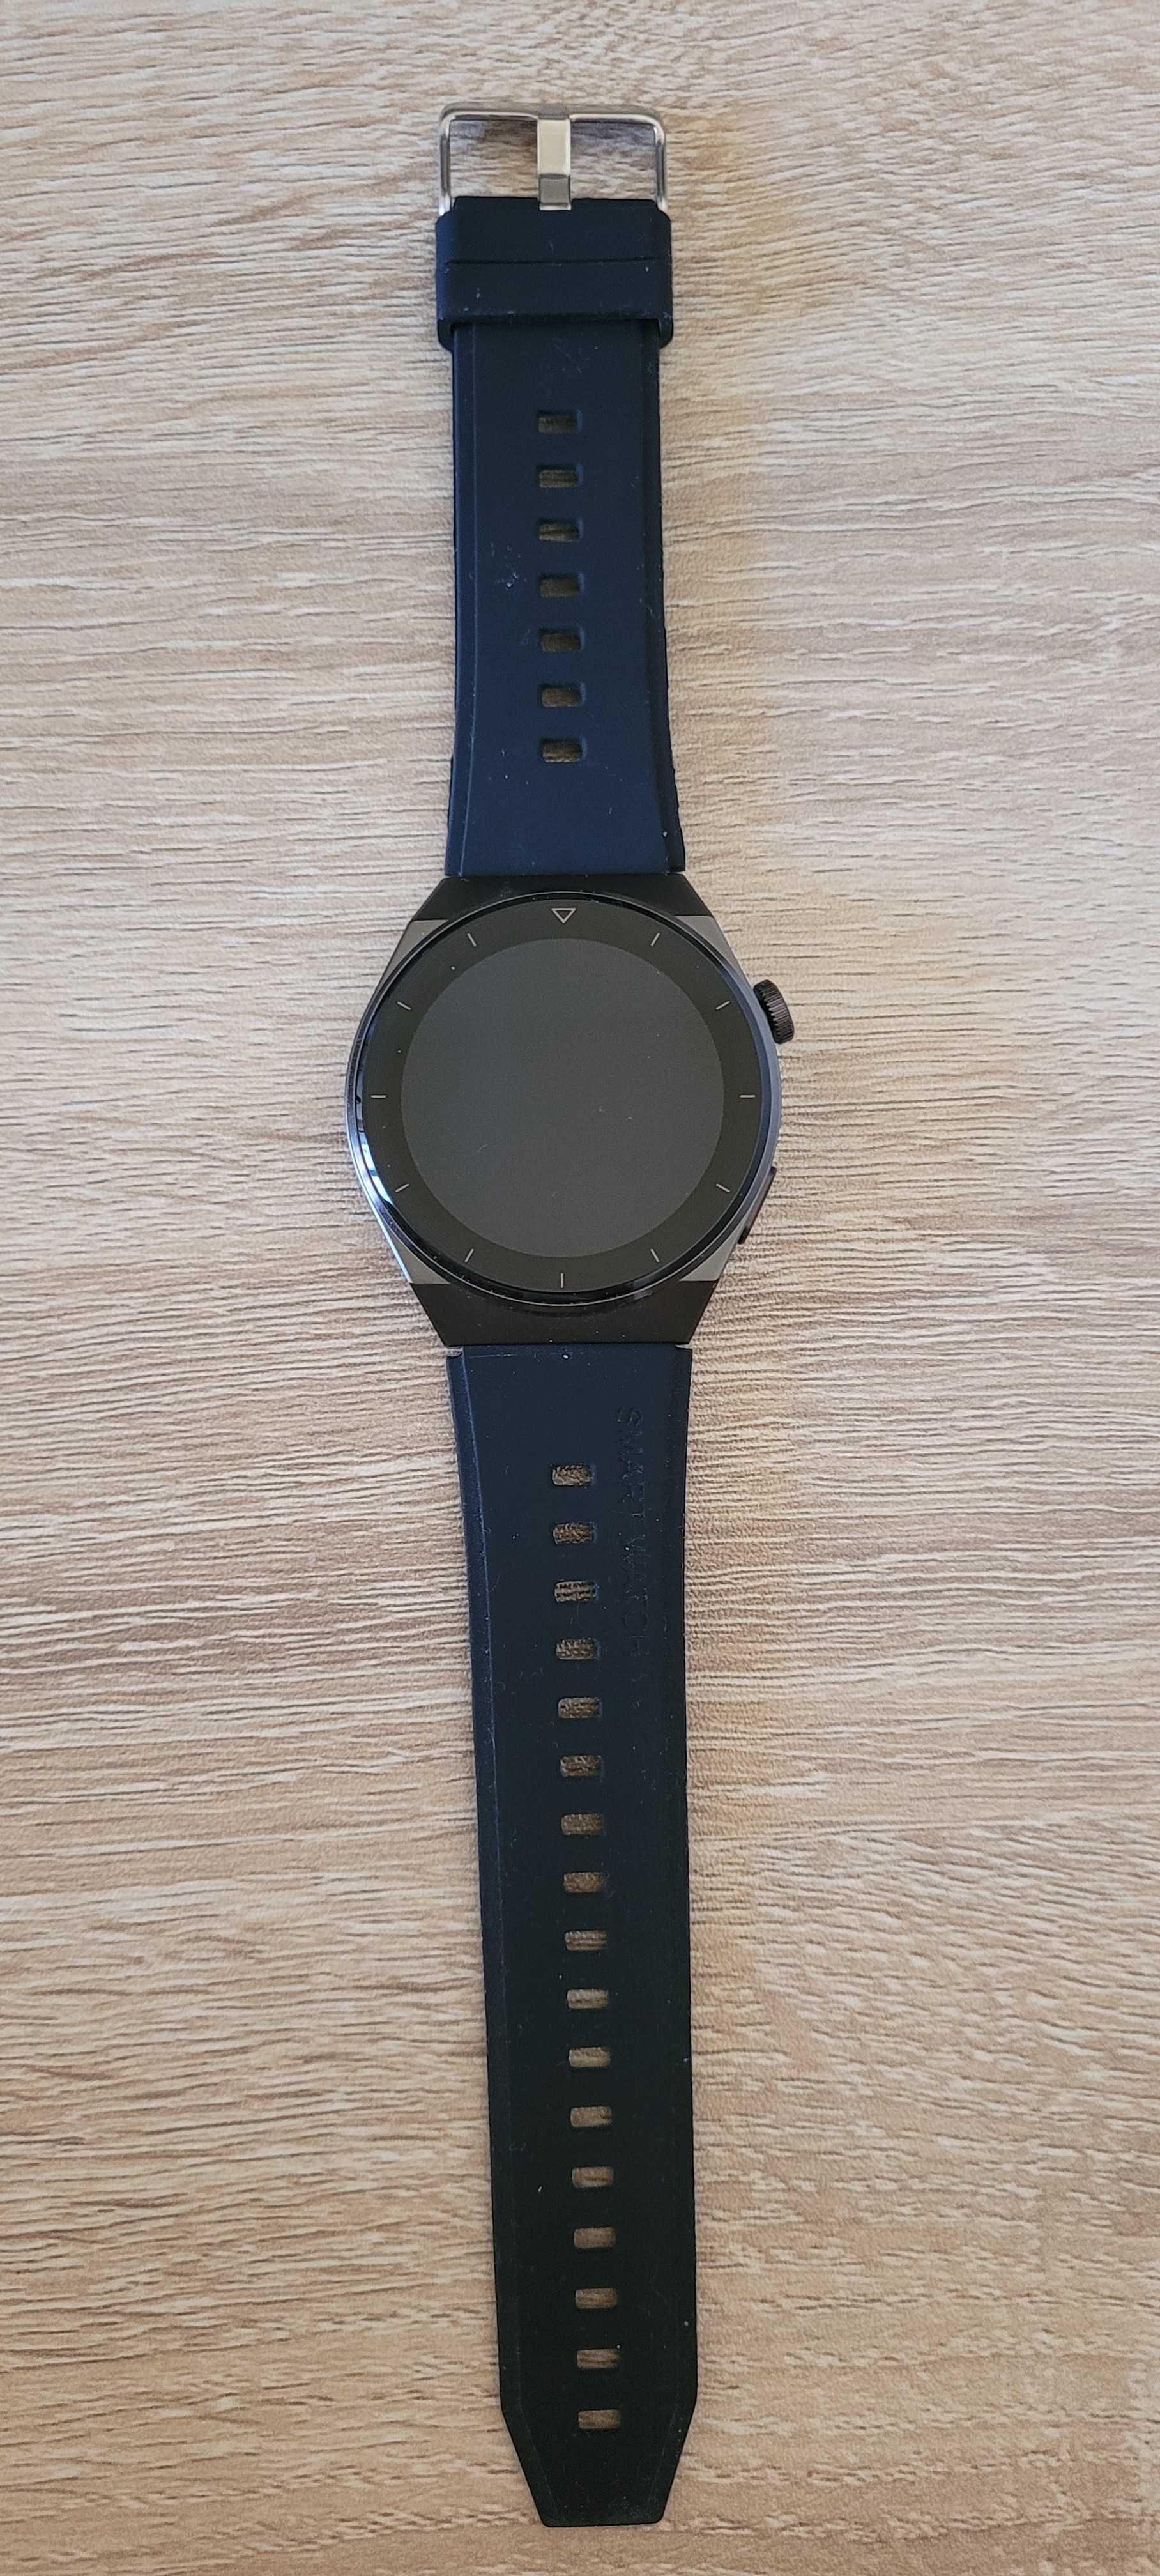 Smartwatch W&O GT3 Pro